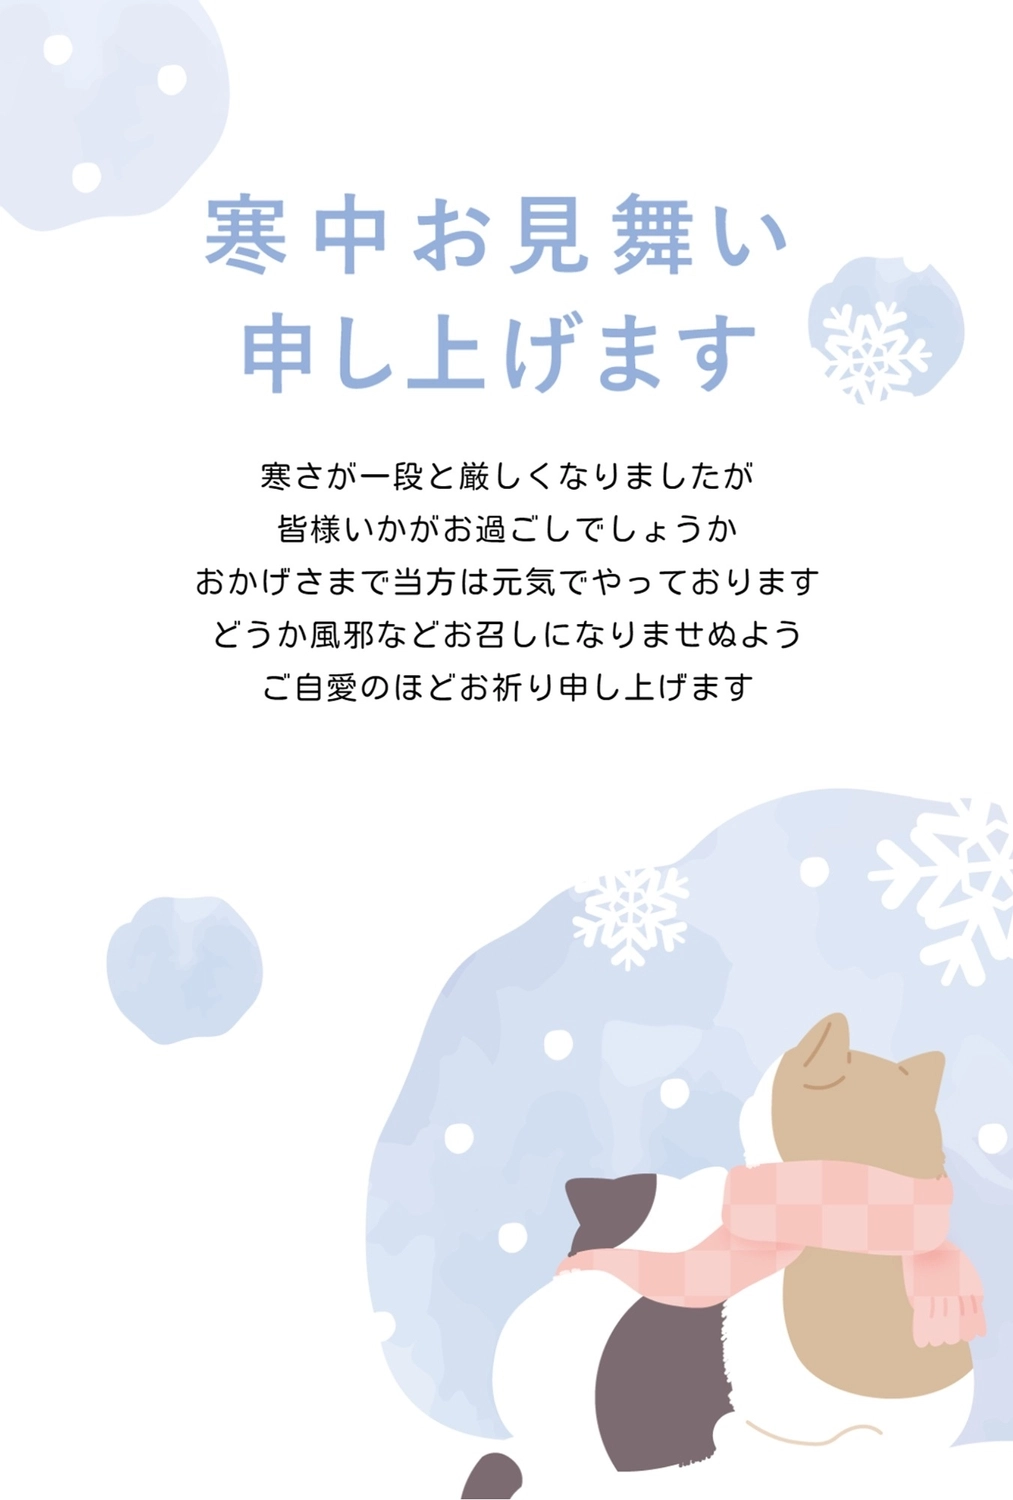 猫の背中と雪の結晶の寒中見舞い, 水の色, 作成, デザイン, 寒中見舞いテンプレート